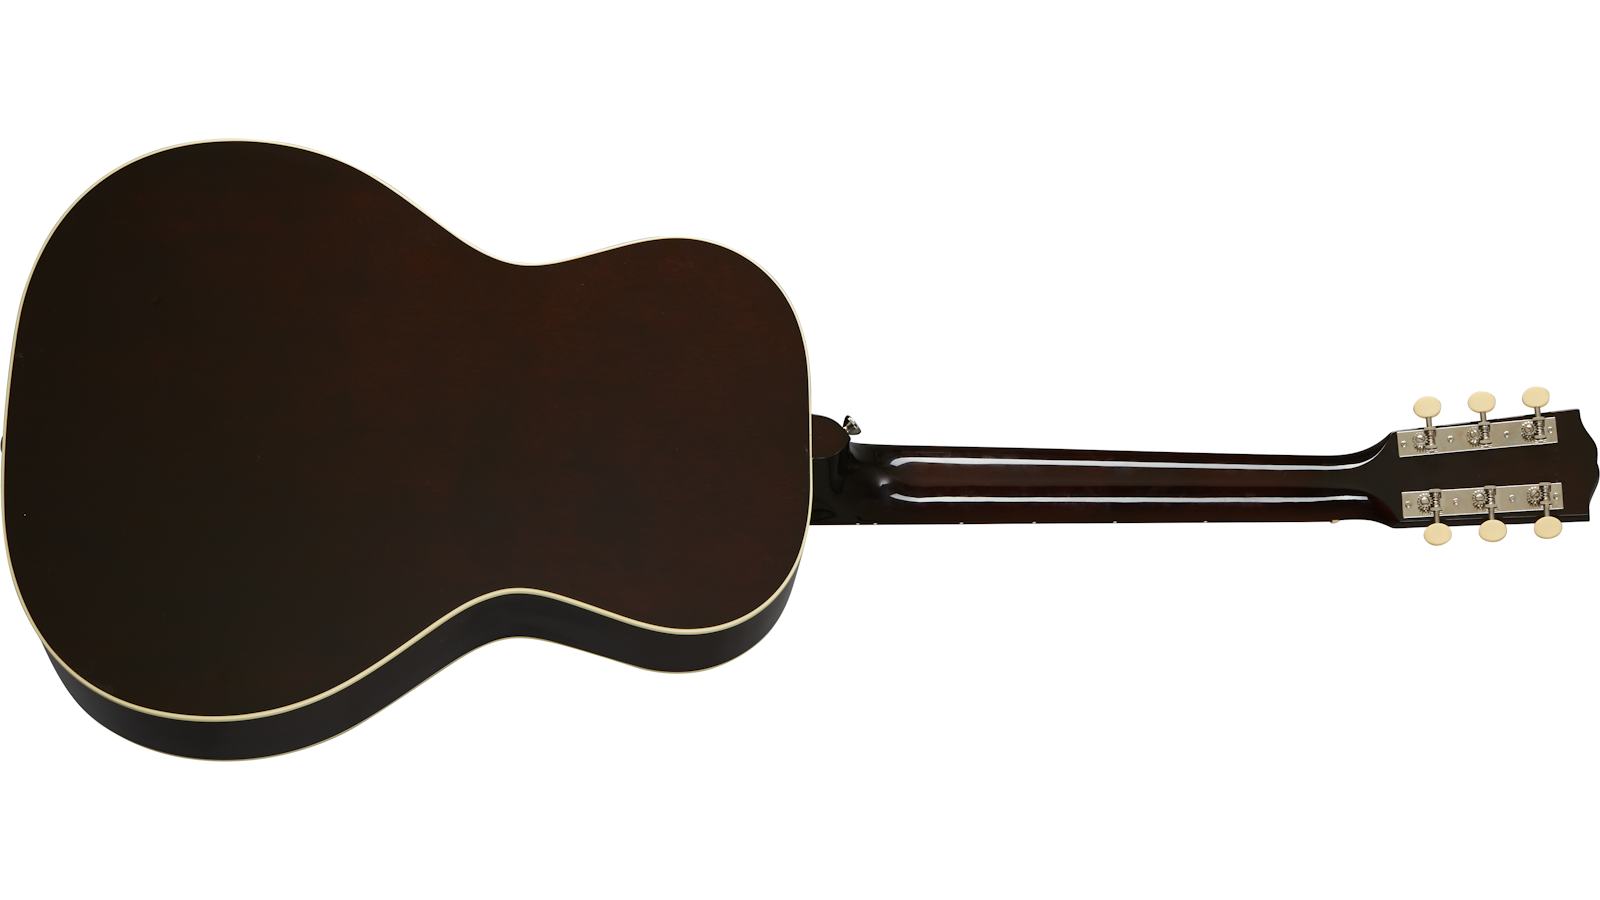 Gibson L-00 Original 2020 Parlor Epicea Acajou Rw - Vintage Sunburst - Electro acoustic guitar - Variation 1